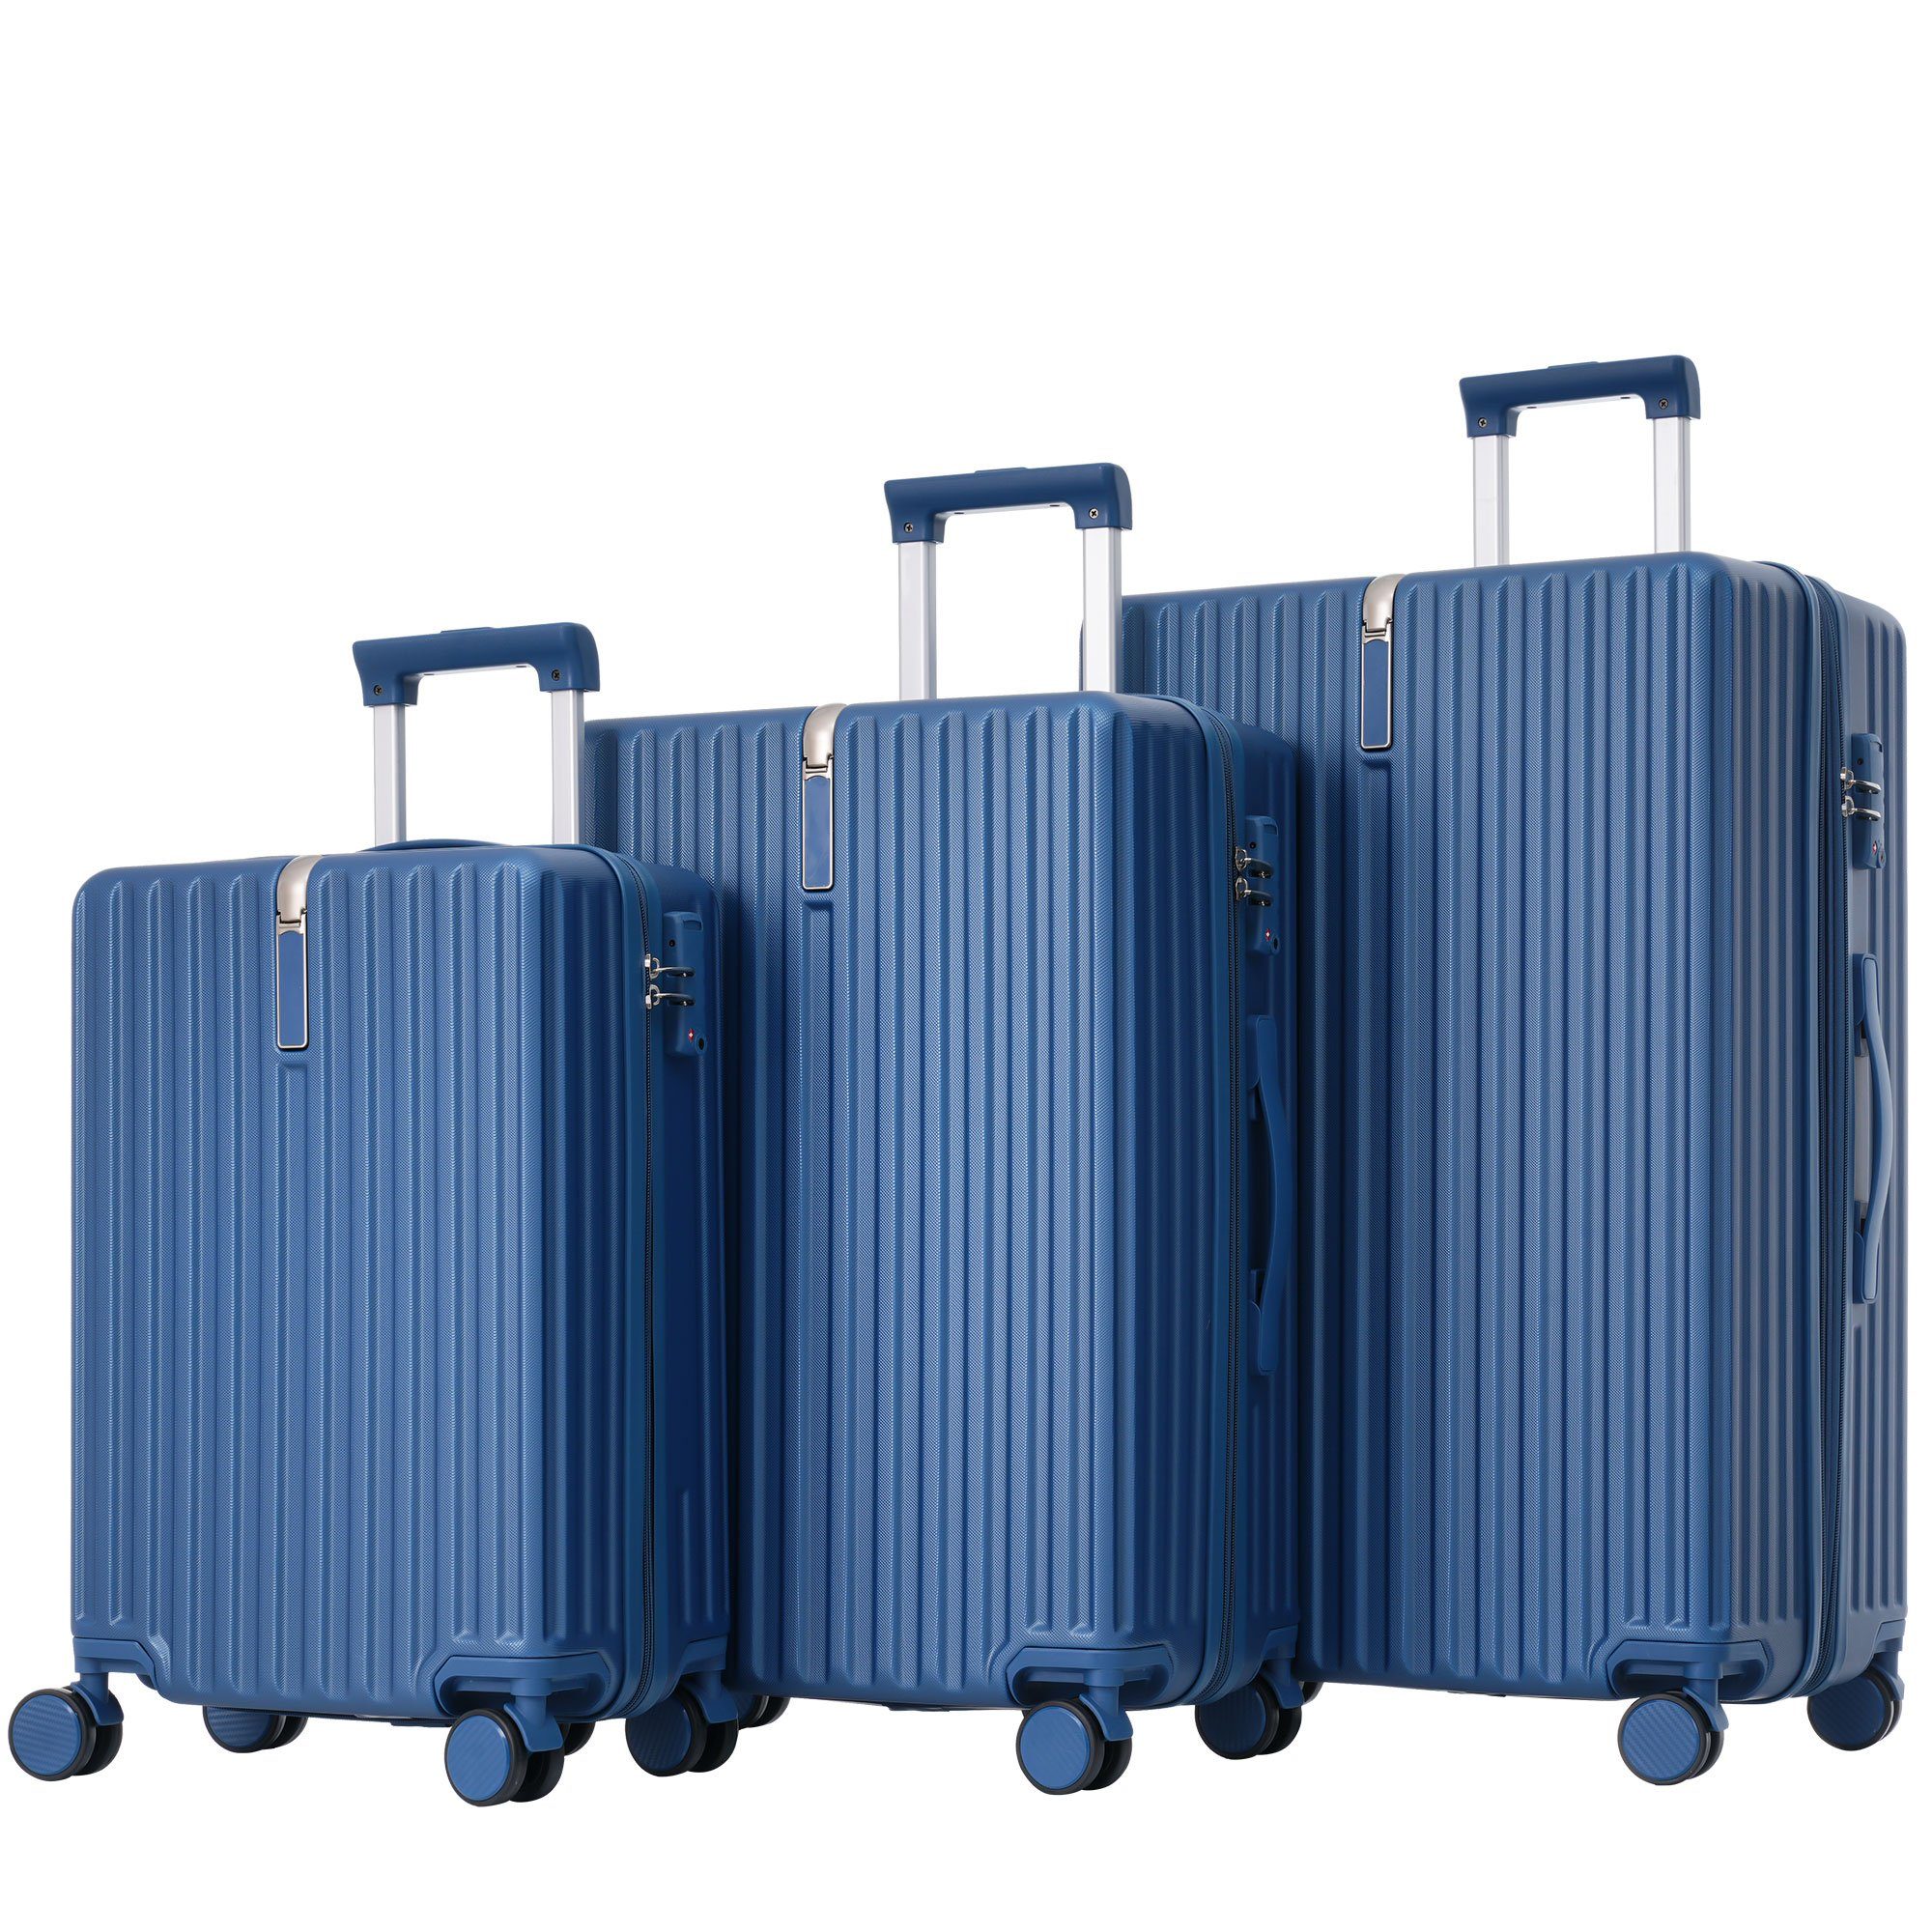 Ulife Trolleyset Kofferset Handgepäck Reisekoffer ABS-Material, TSA Zollschloss, 4 Rollen, (3 tlg) Blau | Trolley-Sets